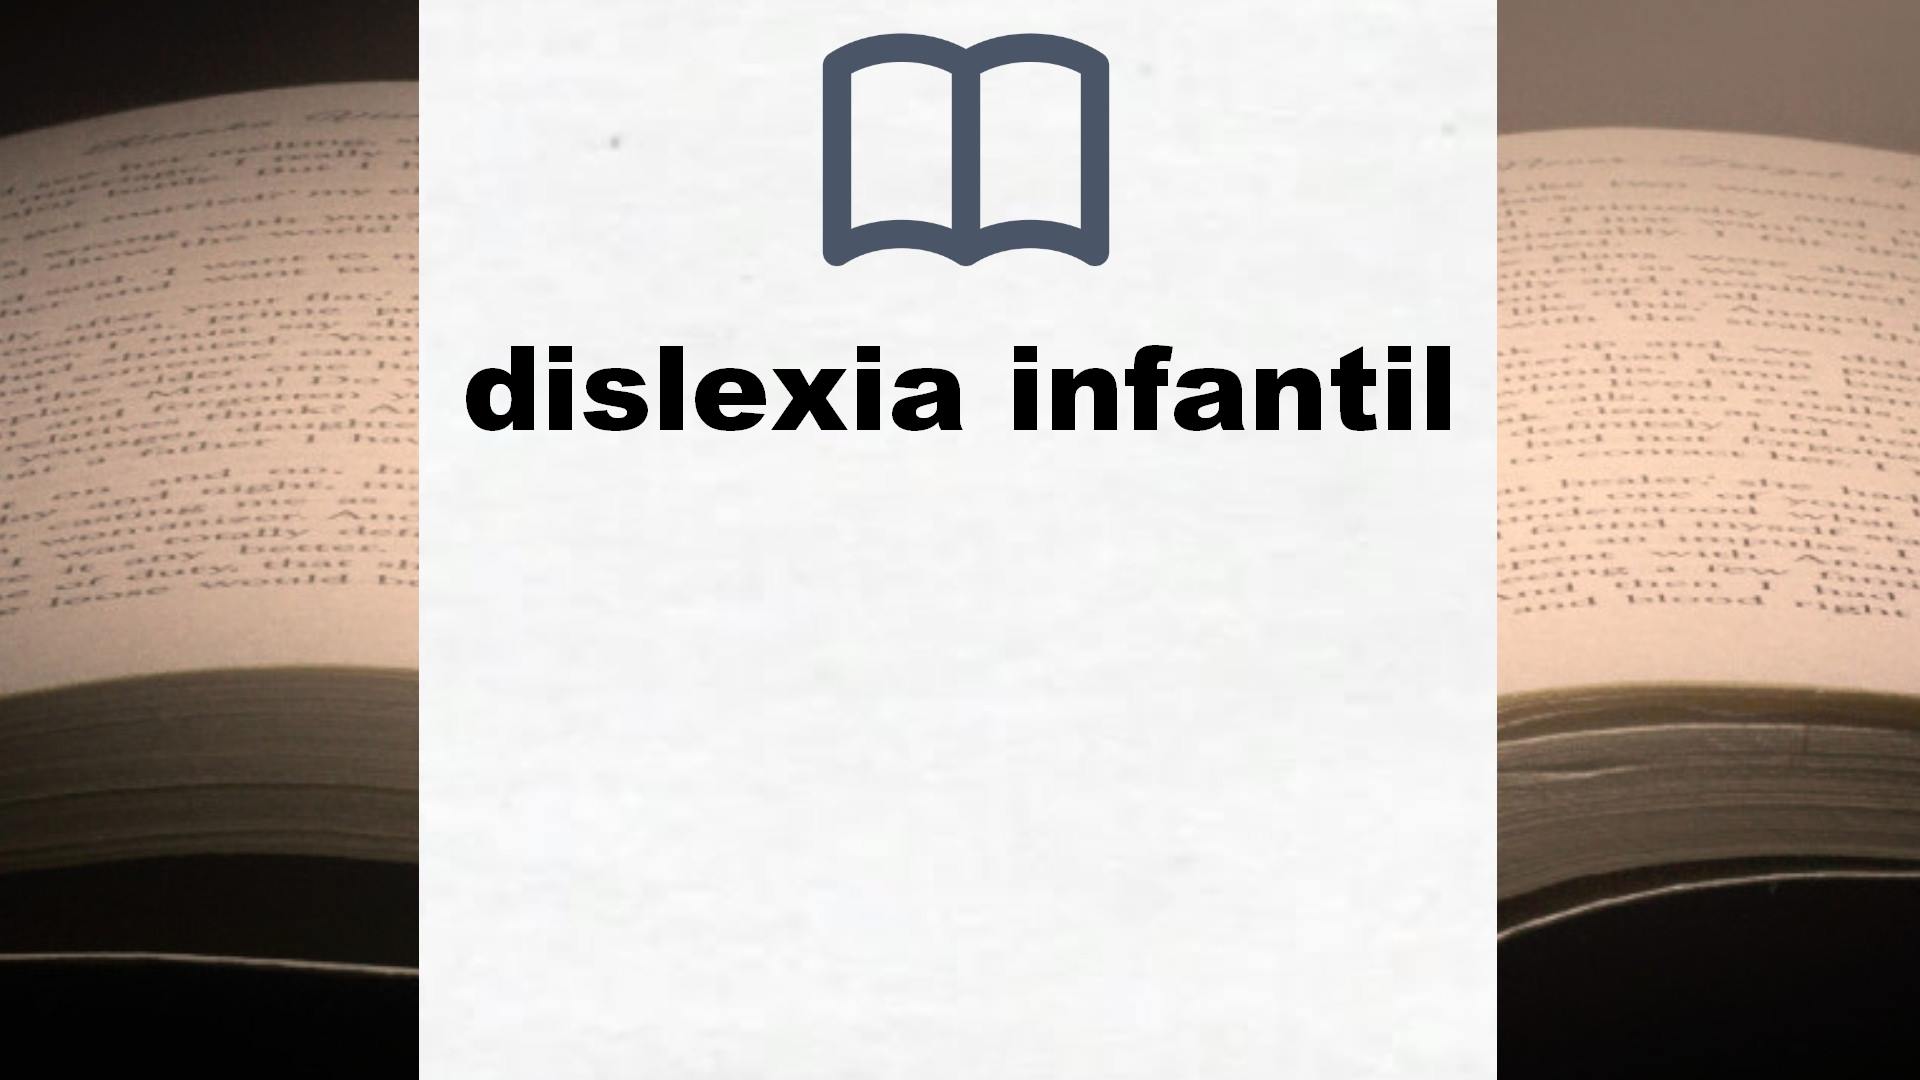 Libros sobre dislexia infantil